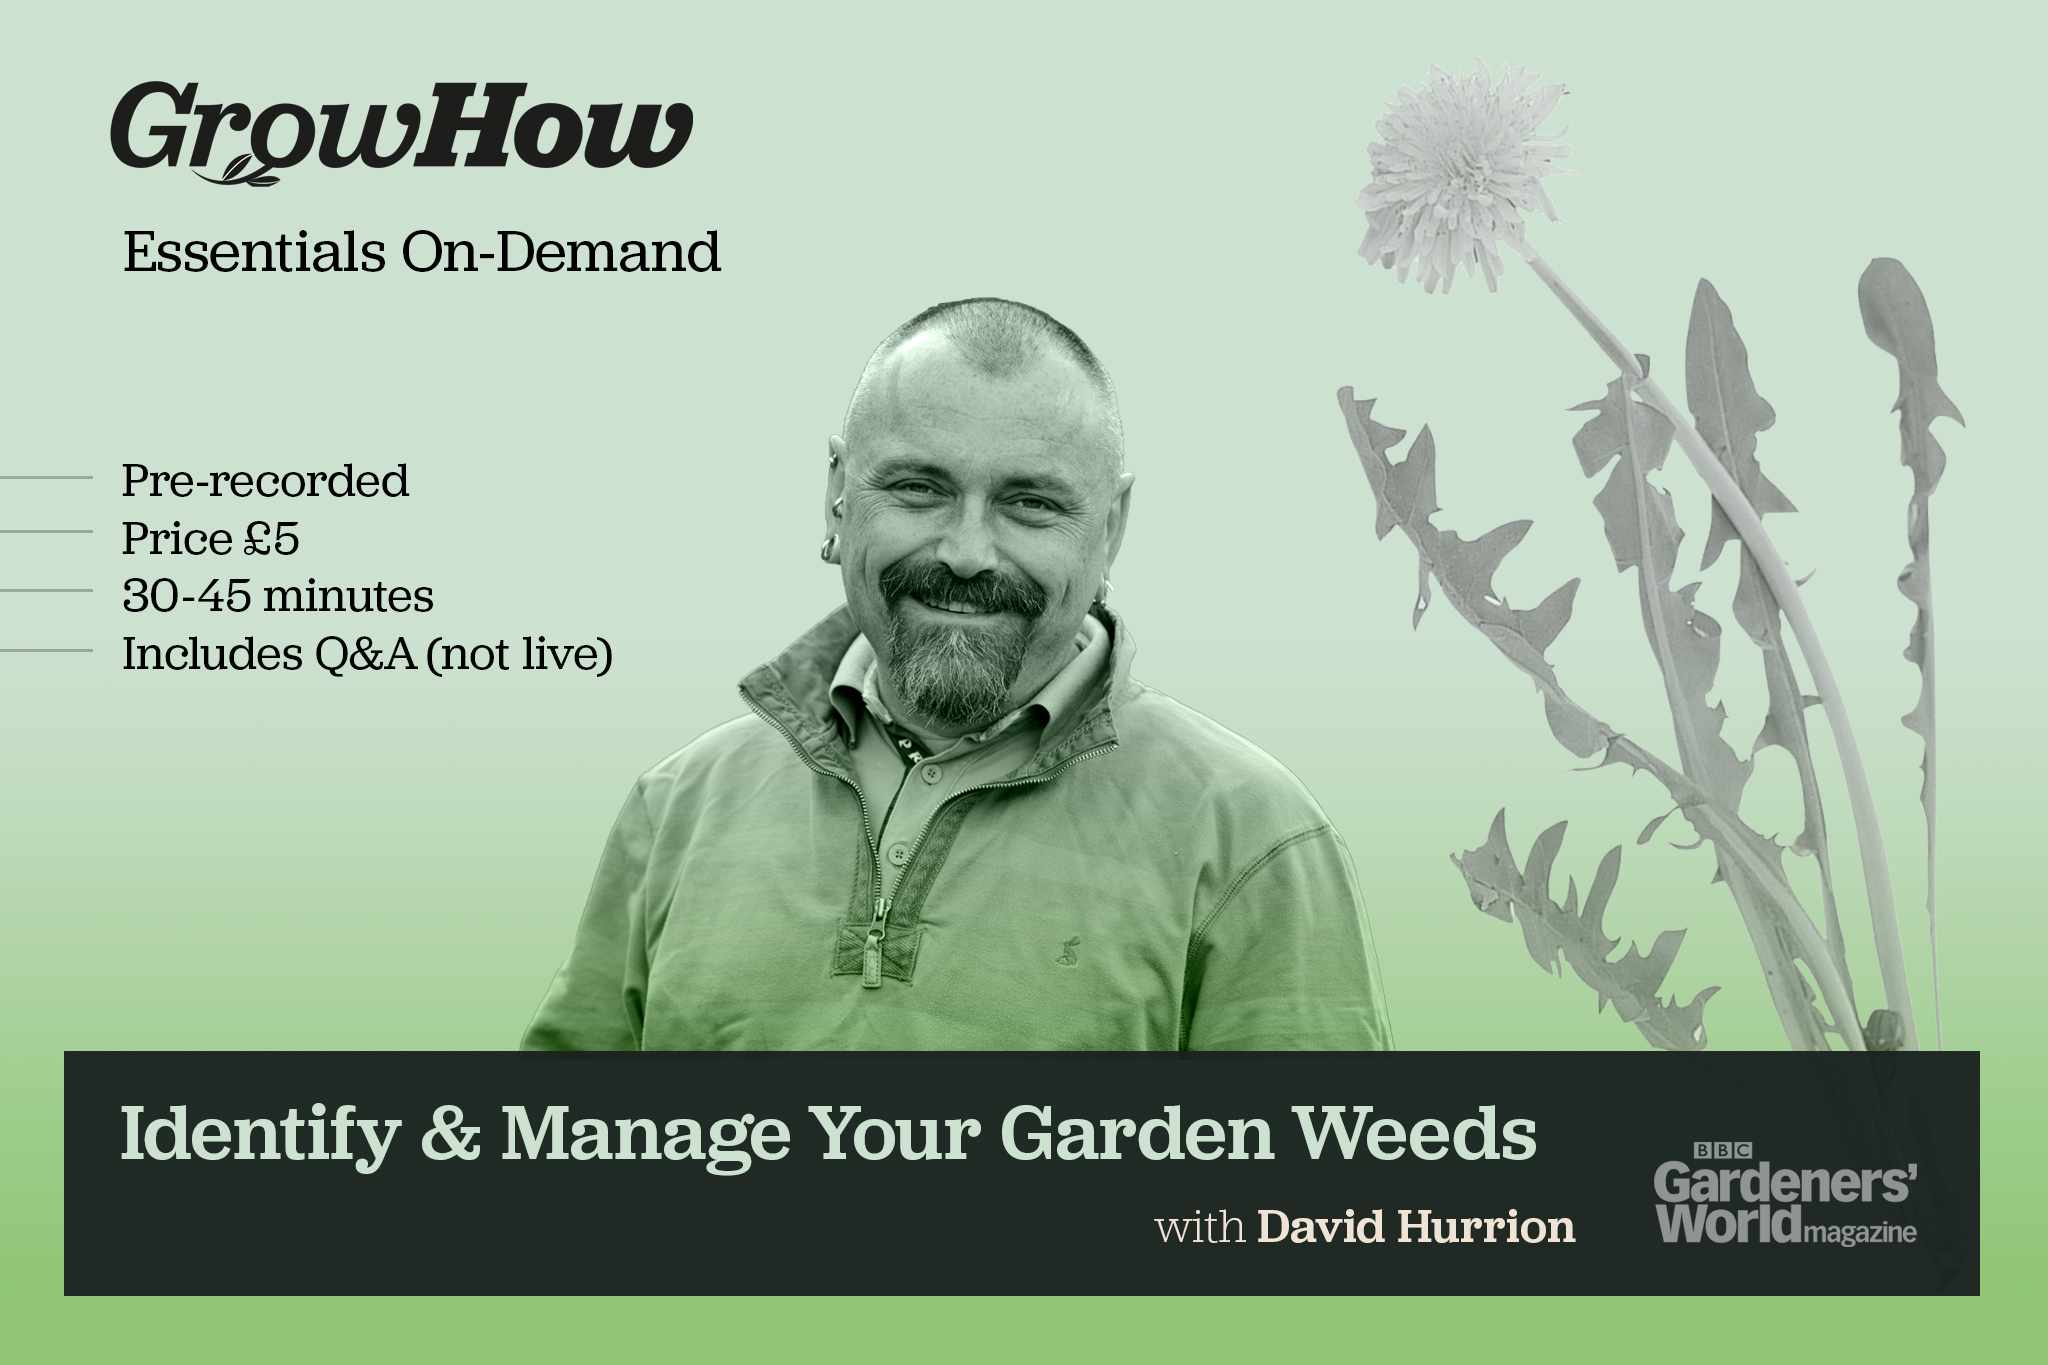 On-Demand Essentials: Know & Manage Your Garden Weeds